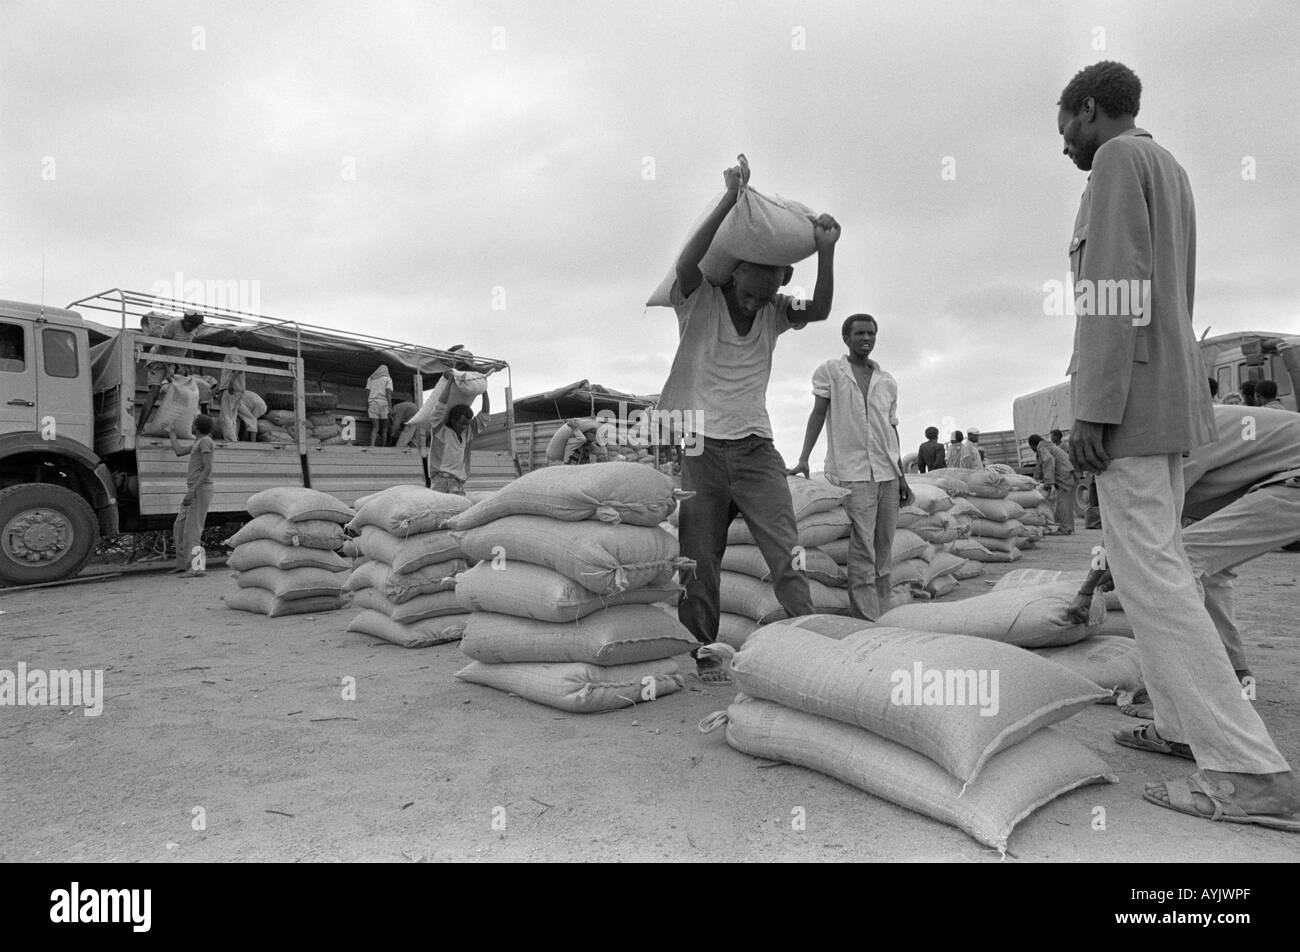 B/W de livraison d'aide alimentaire au camp de réfugiés somaliens.Kebrebeyah, Éthiopie Banque D'Images